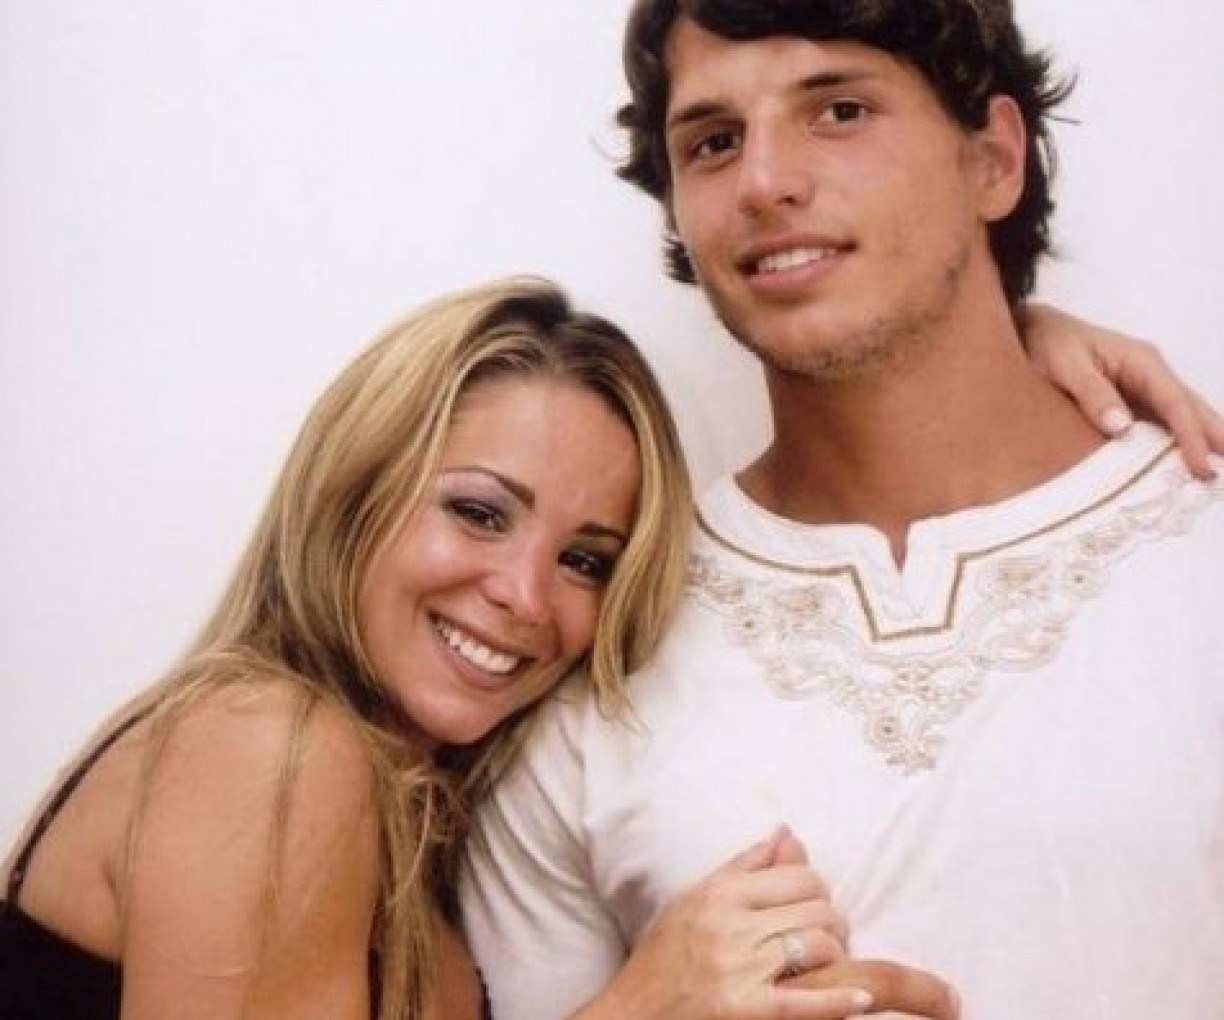 Fernando Fernandes e Danielle Winits iniciaram um relacionamento quando ele tinha 21 anos e ela, 29, em 2002 — Foto: Reprodução